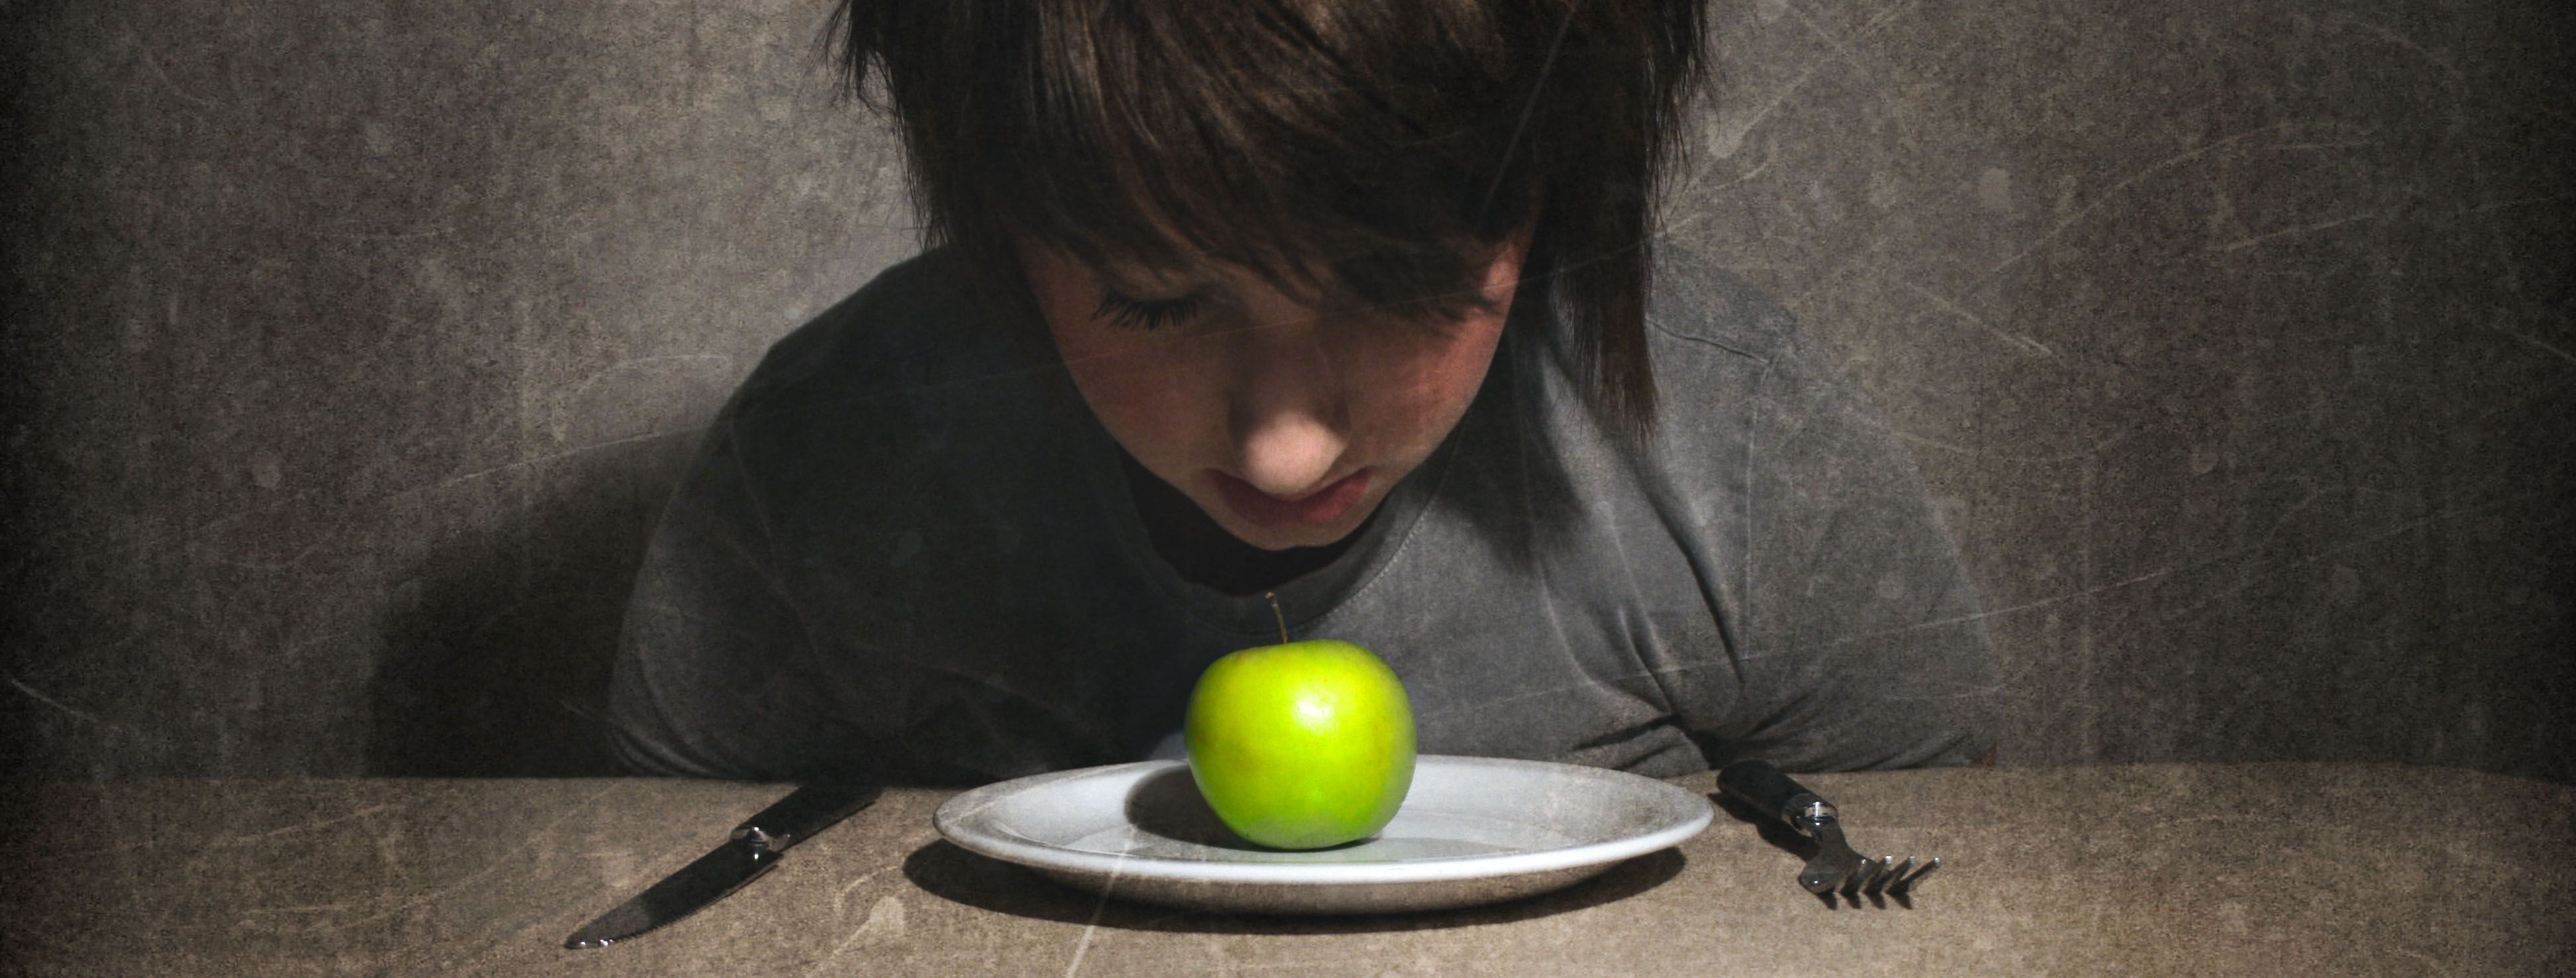 Eating Disorders Awareness Week .ashtonshospitalpharmacy.com